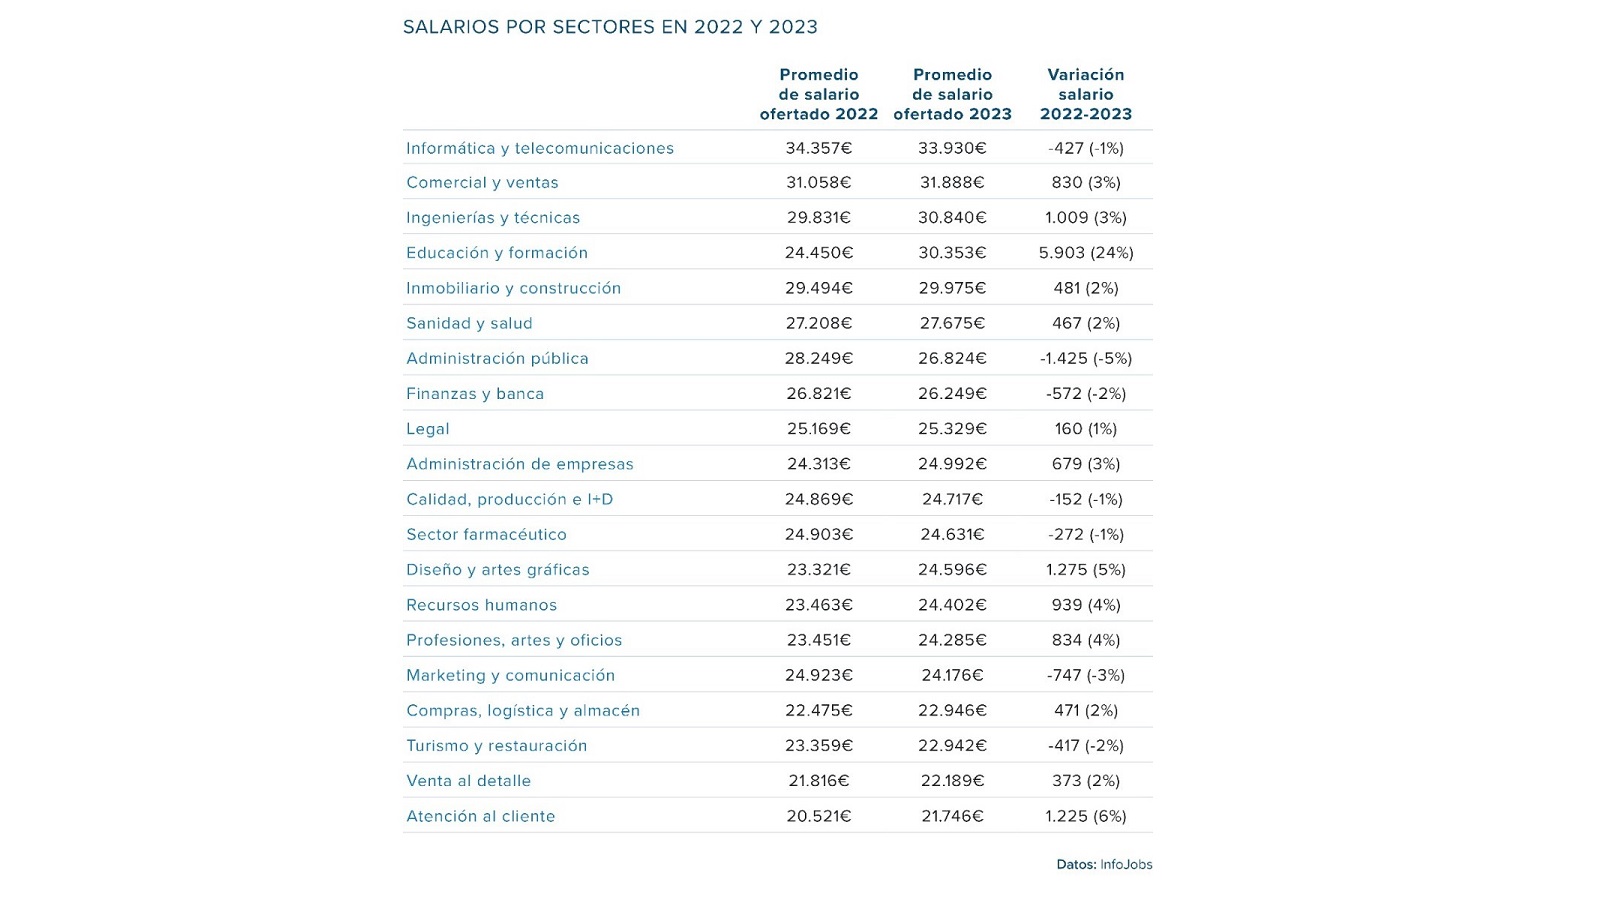 imagen con una tabla de los salarios por sectores 2023 infojobs-esade